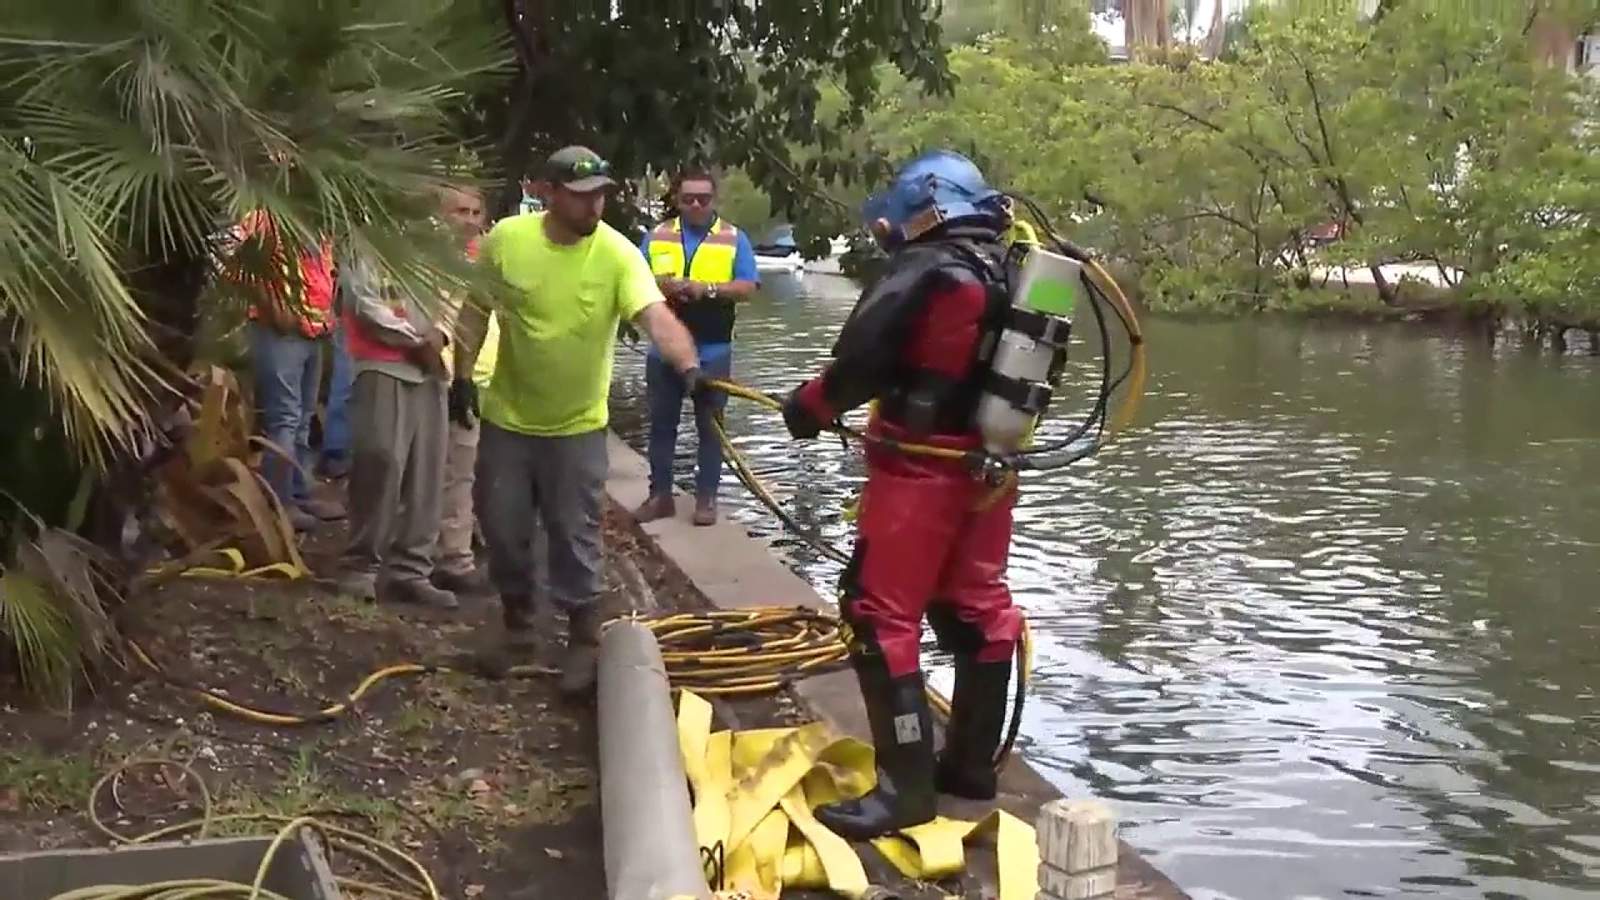 Industrial divers tackle major sewage line break in Fort Lauderdale, third in 2 weeks